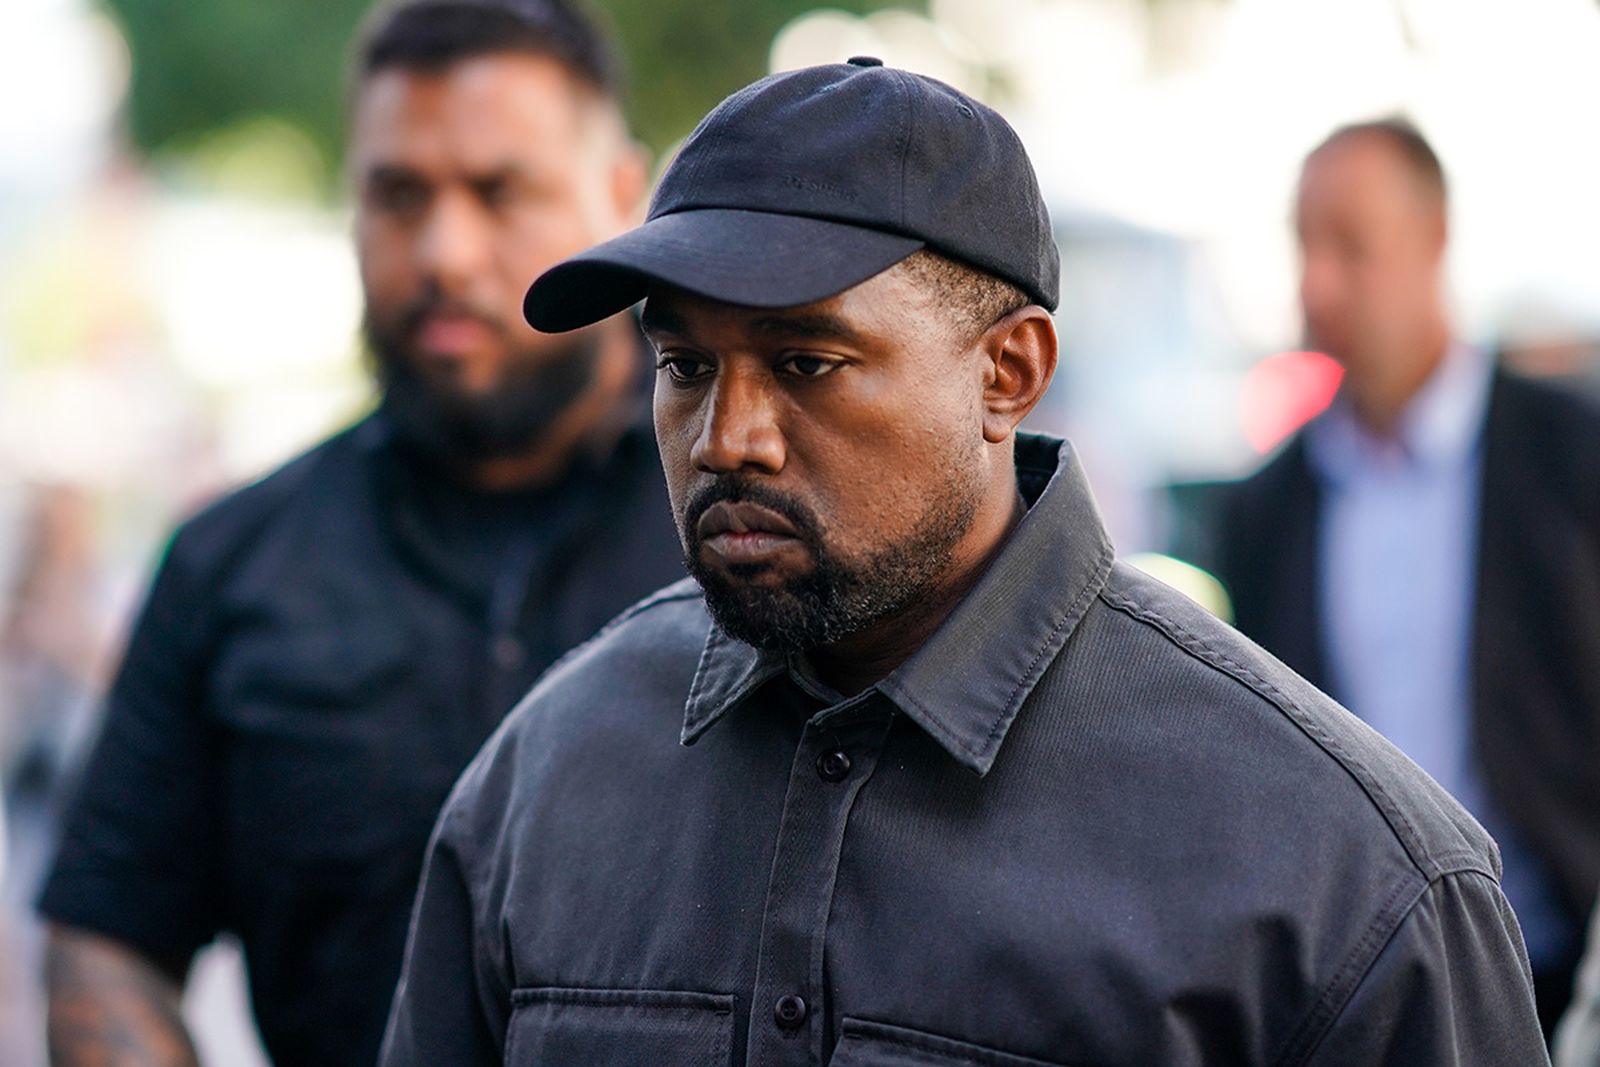 Kanye West black cap and jacket